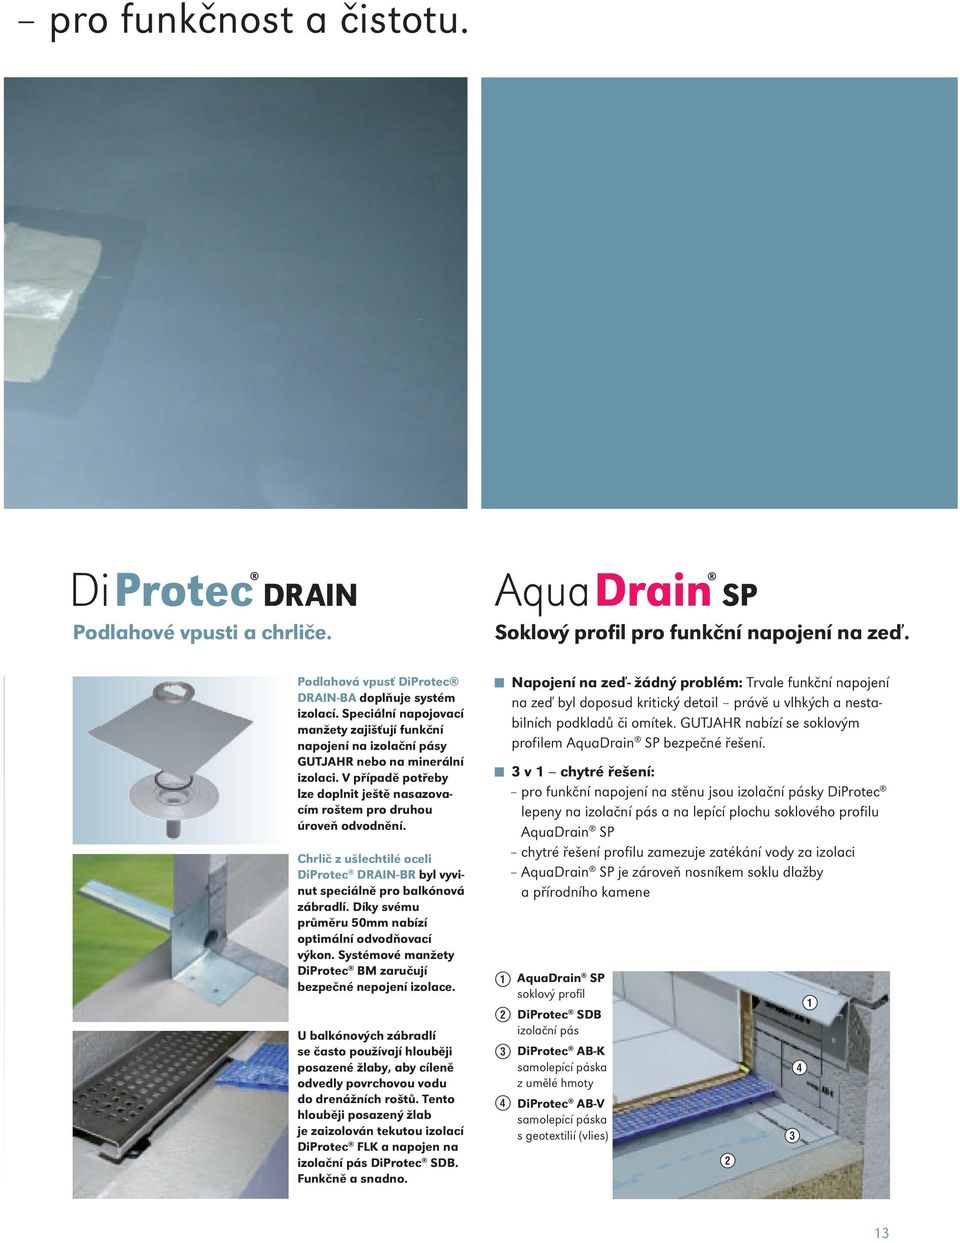 Chrlič z ušlechtilé oceli DiProtec DRAIN-BR byl vyvinut speciálně pro balkónová zábradlí. Díky svému průměru 50mm nabízí optimální odvodňovací výkon.